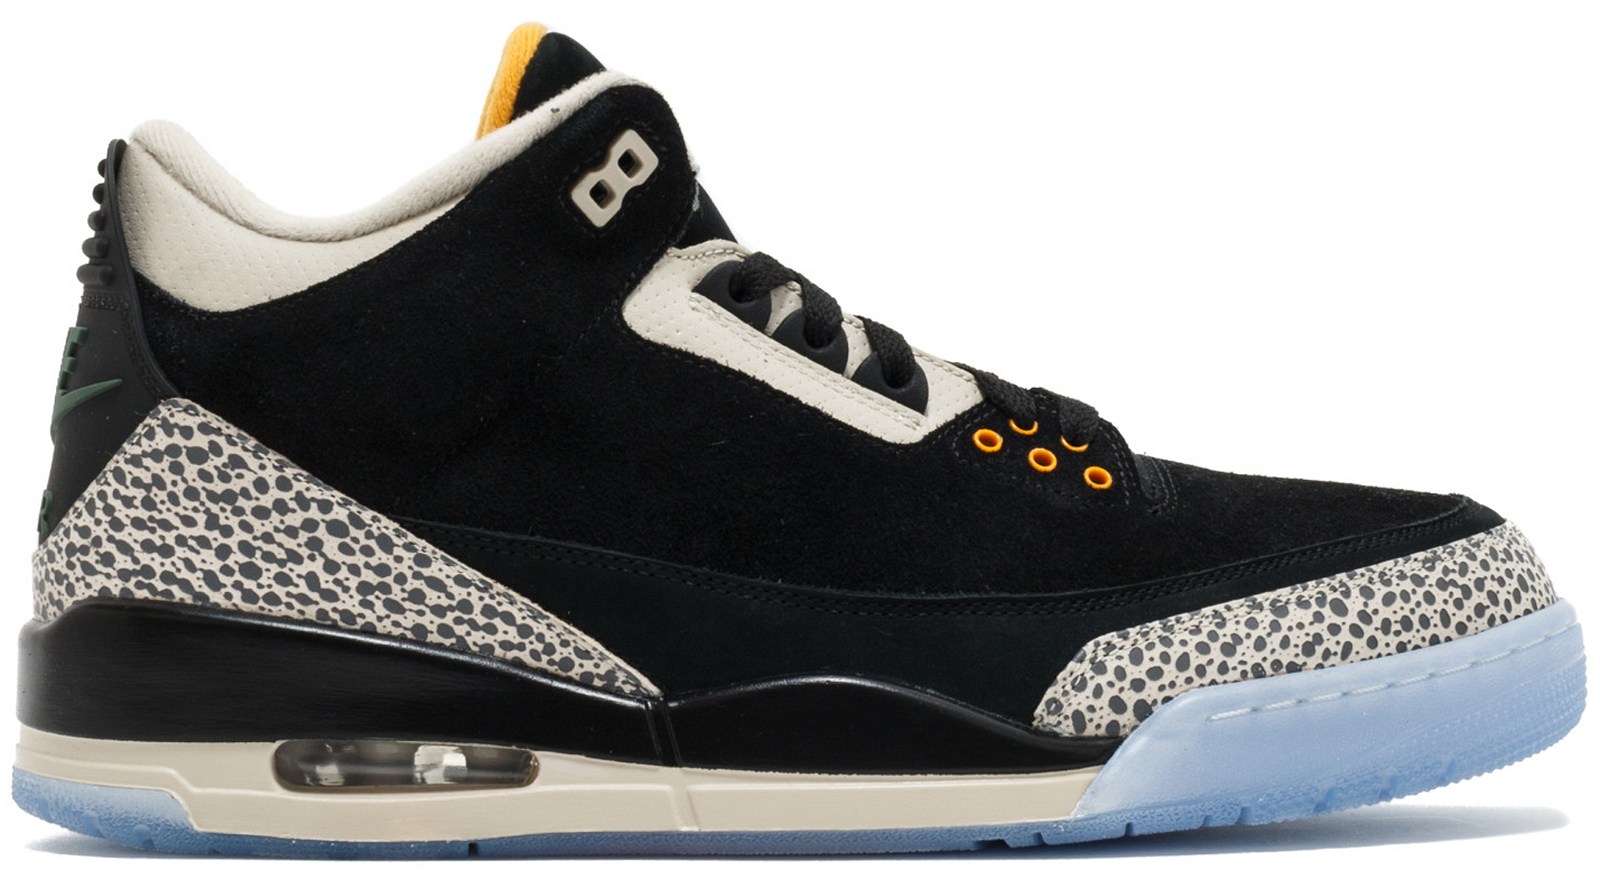 Jordan 3 Retro Atmos sneakers